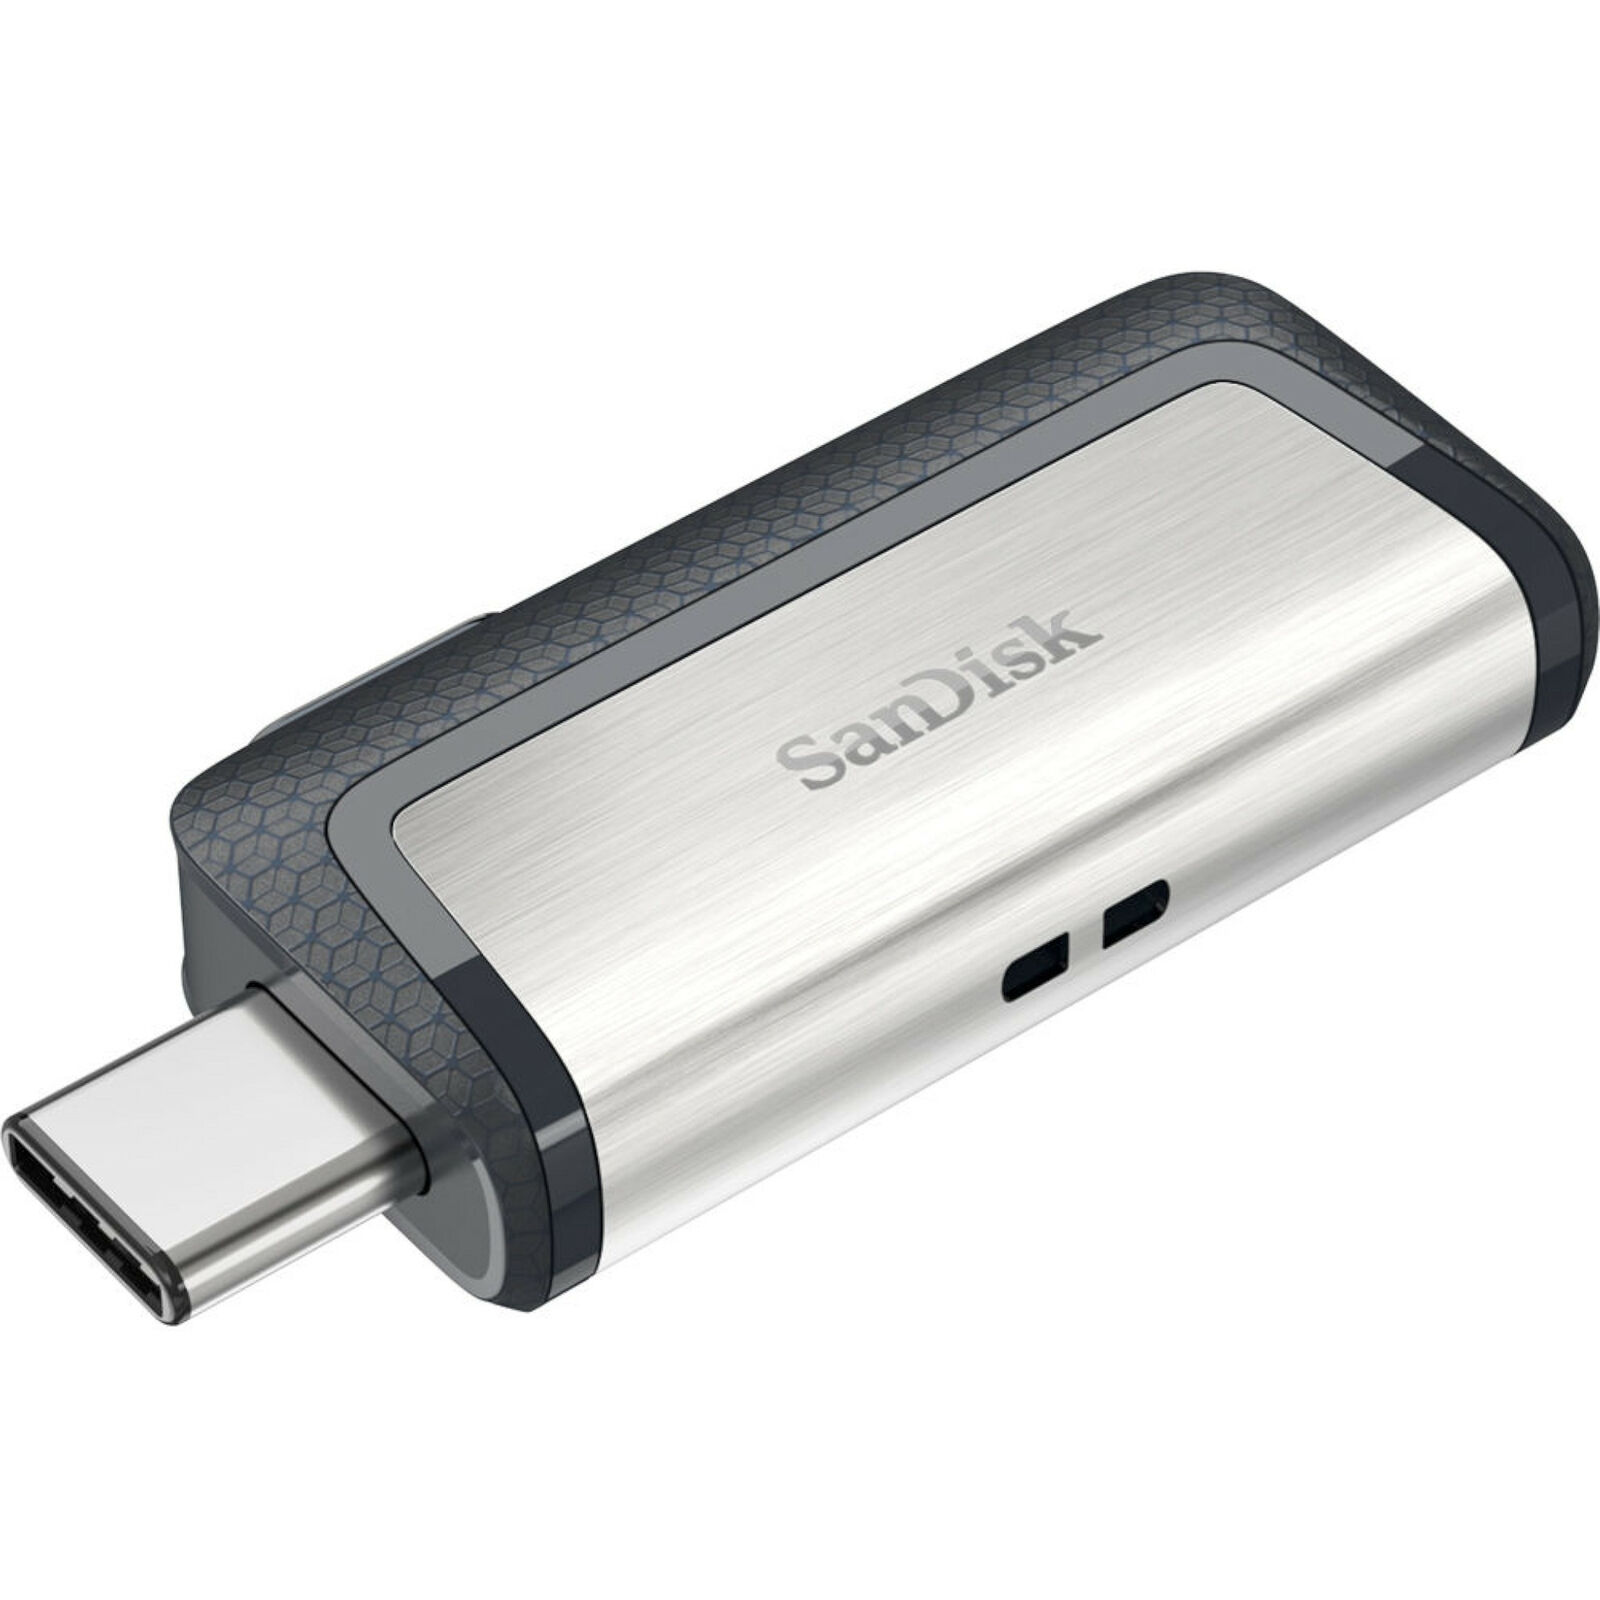 NEW SanDisk SDDDC2-064G-A46 Ultra 64GB USB 3.1 Dual Drive USB Type-C Flash Drive